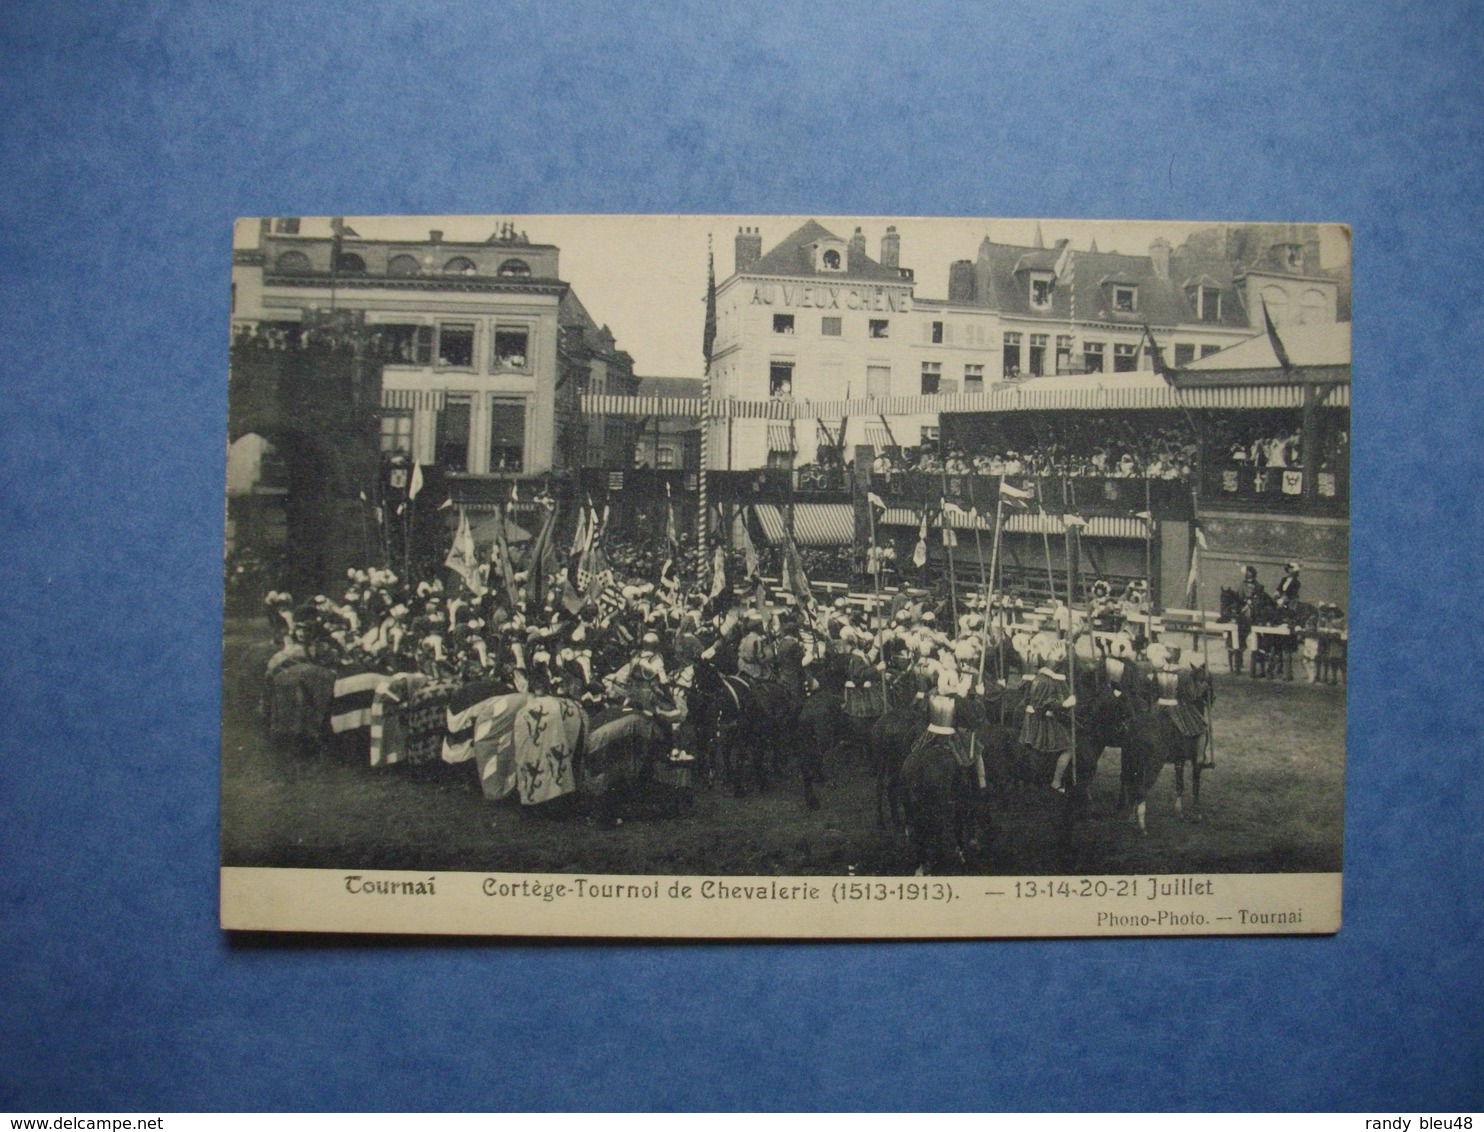 TOURNAI  -  Cortège Tournoi De Chevalerie  -  1513 - 1913  -  13-14-20-21 Juillet  - ( Regroupement  ) -  BELGIQUE - Tournai